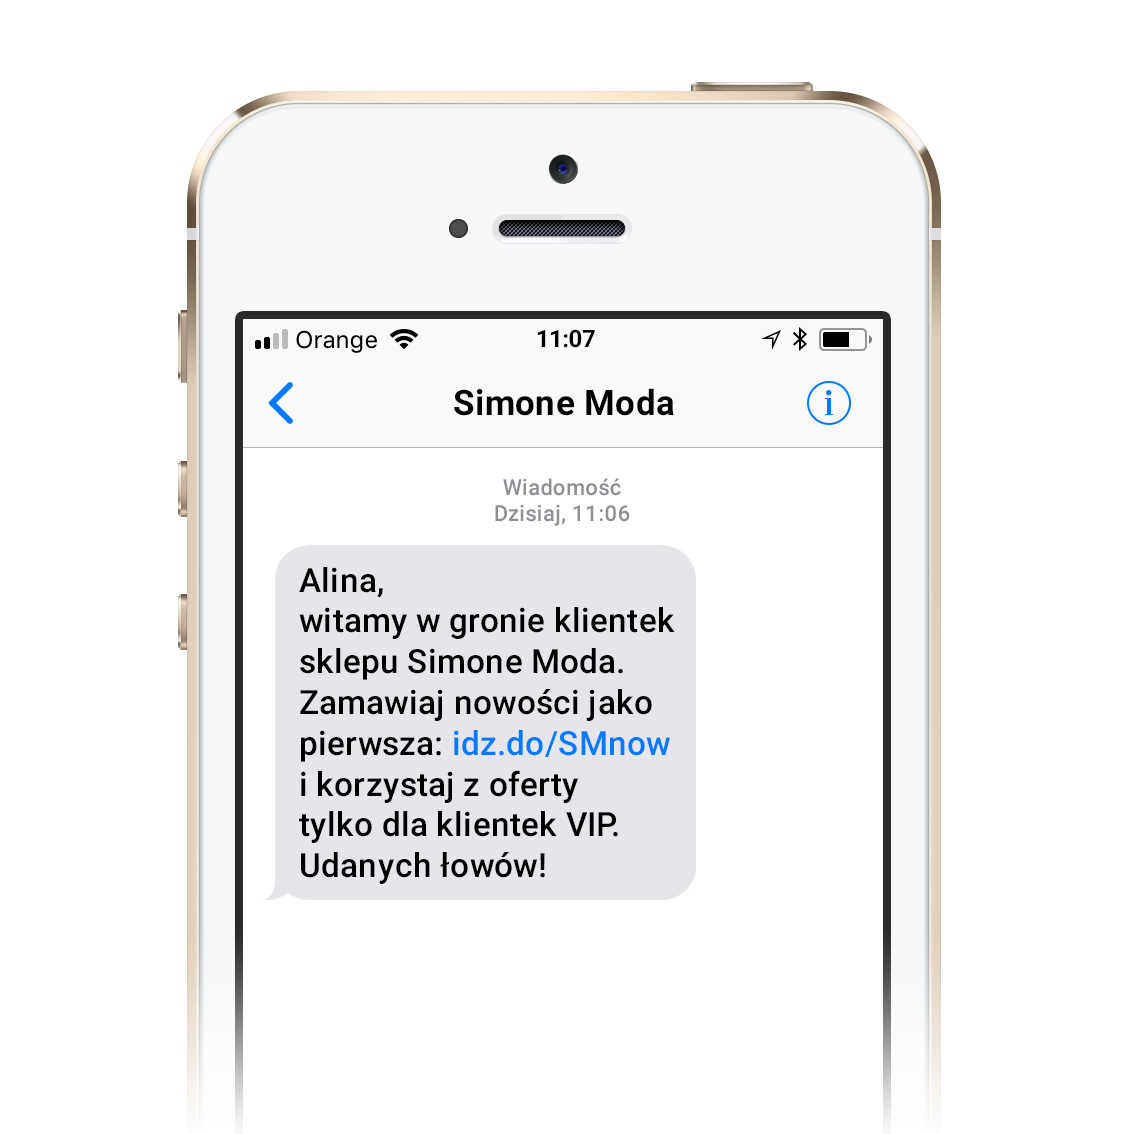 Marketing SMS wsparty poprzez treści z call to action oraz krótki link